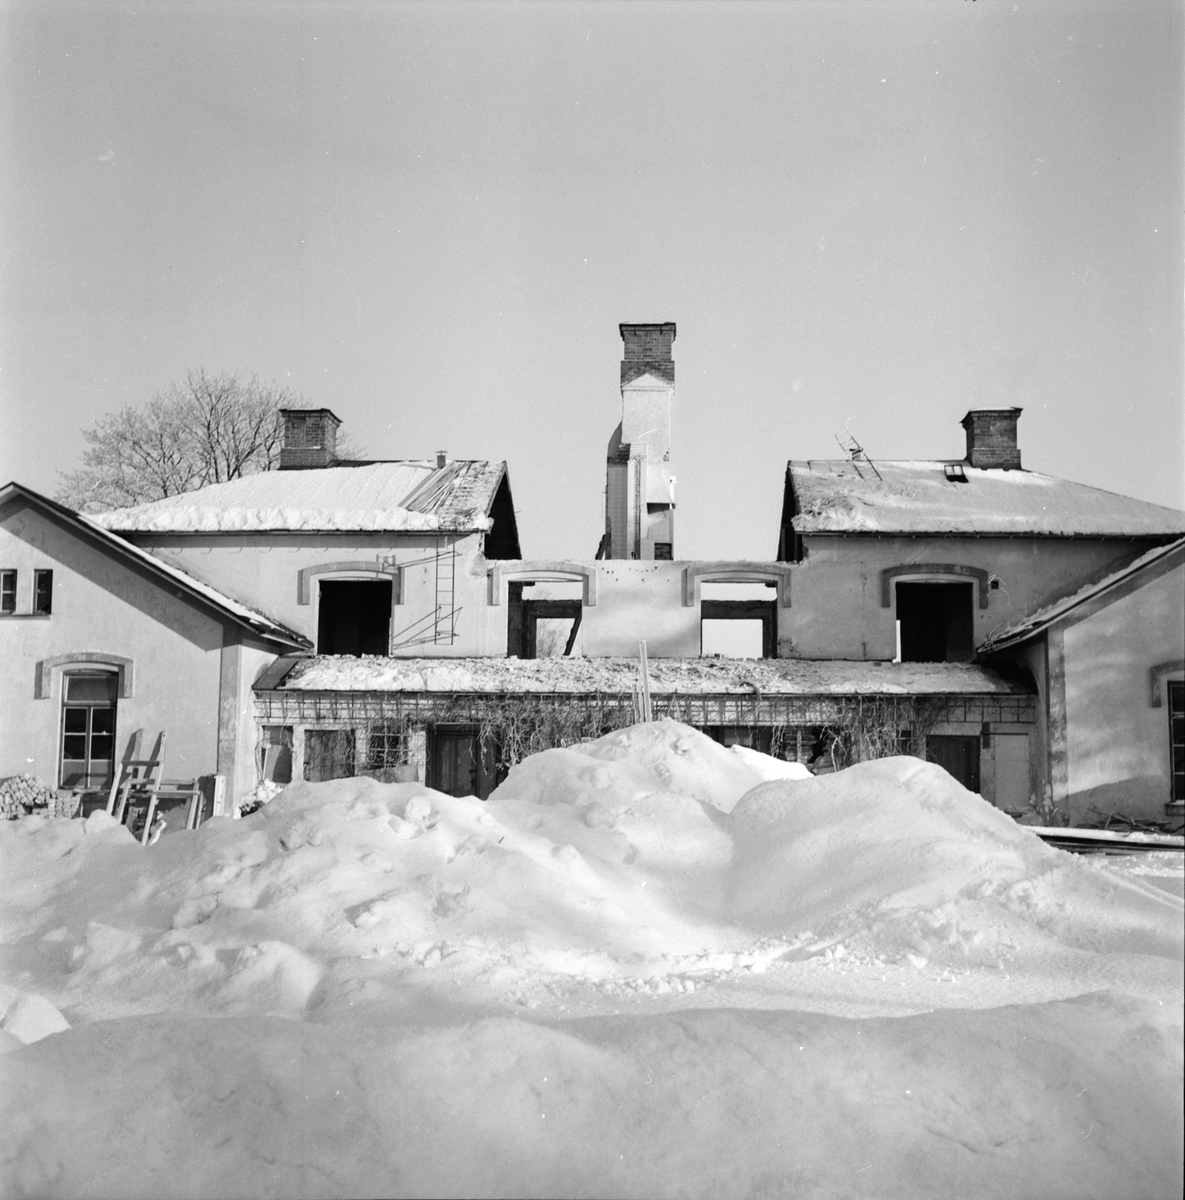 Arbrå,
Koldemo skola rivs,
17 Februari 1967